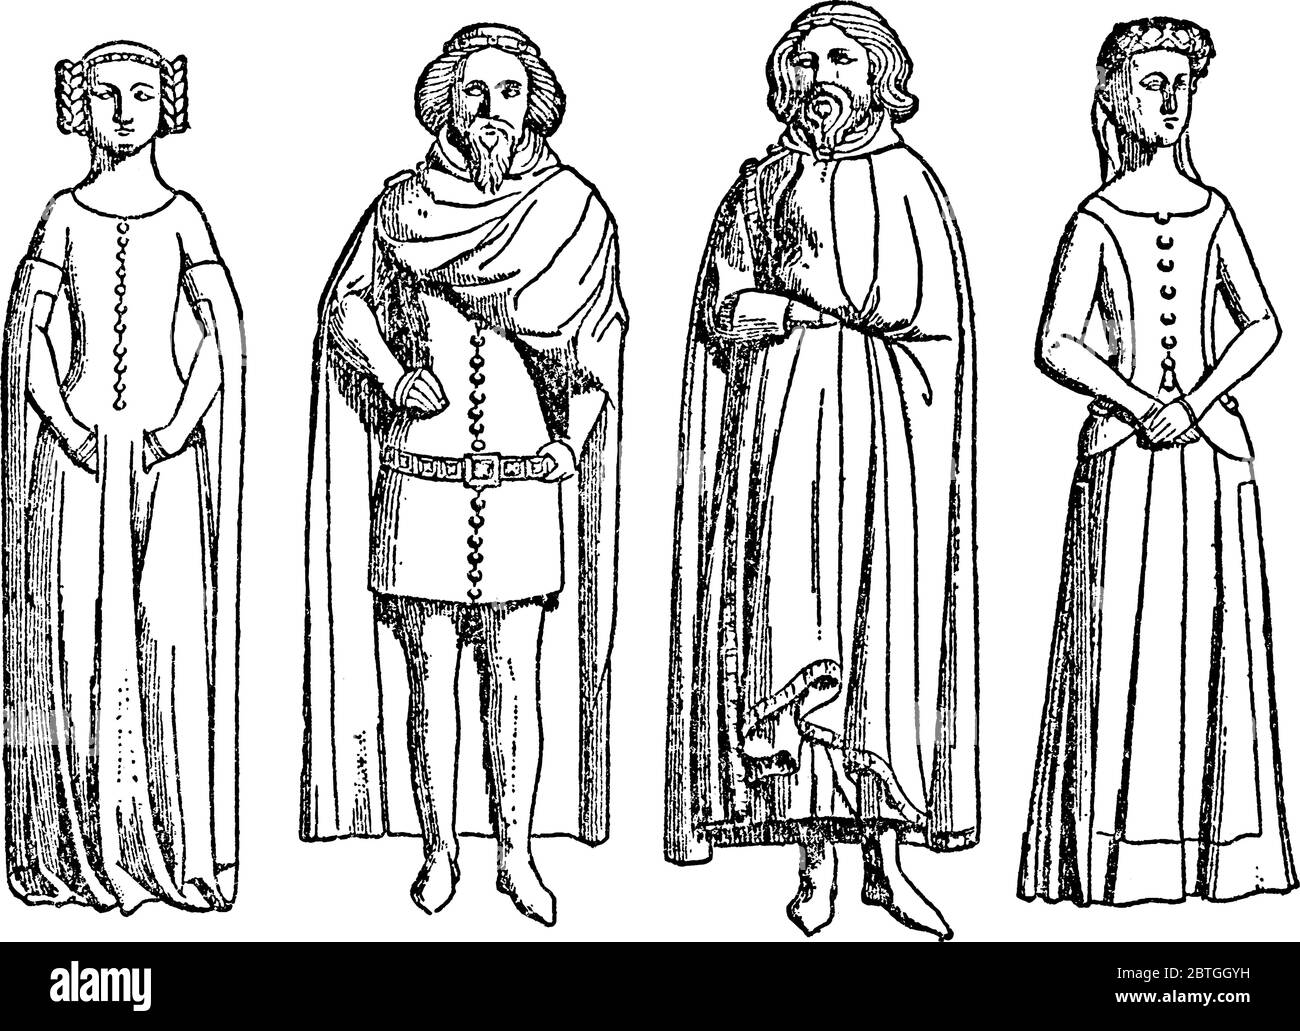 Eine Illustration von König Edward und seinen Kindern Eleanor, Edward, John und Joanna, Vintage-Strichzeichnung oder Gravur Illustration. Stock Vektor